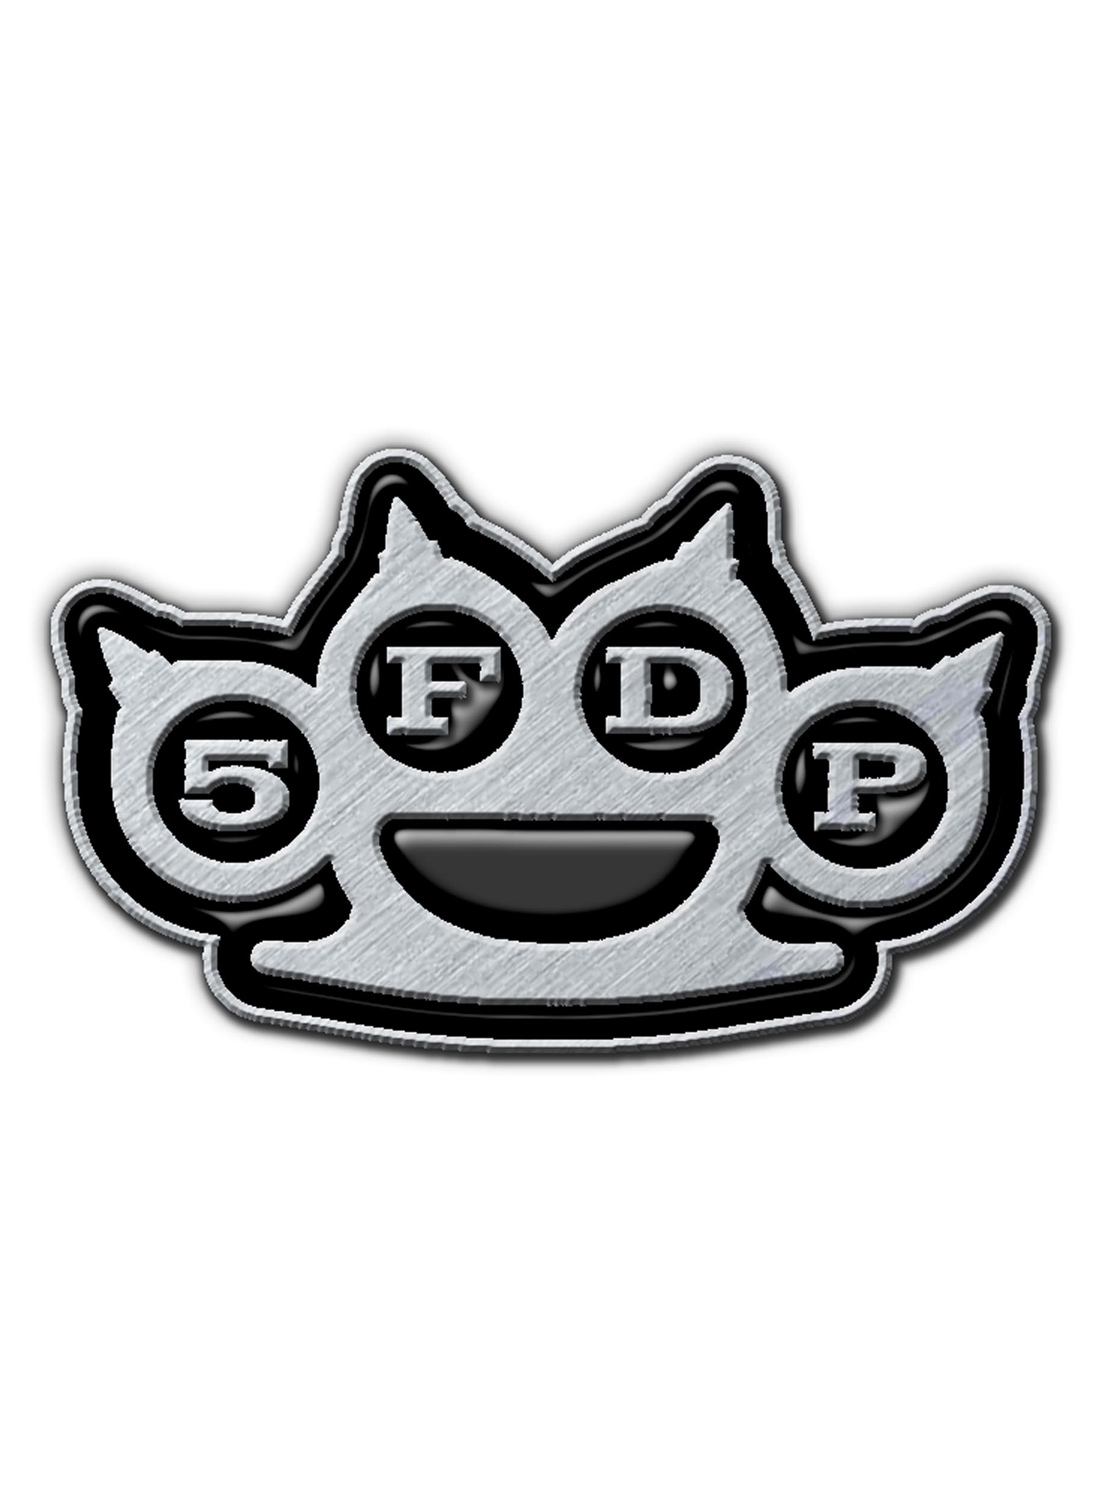 Five Finger Death Punch Knuckles Logo Metal Pin Badge